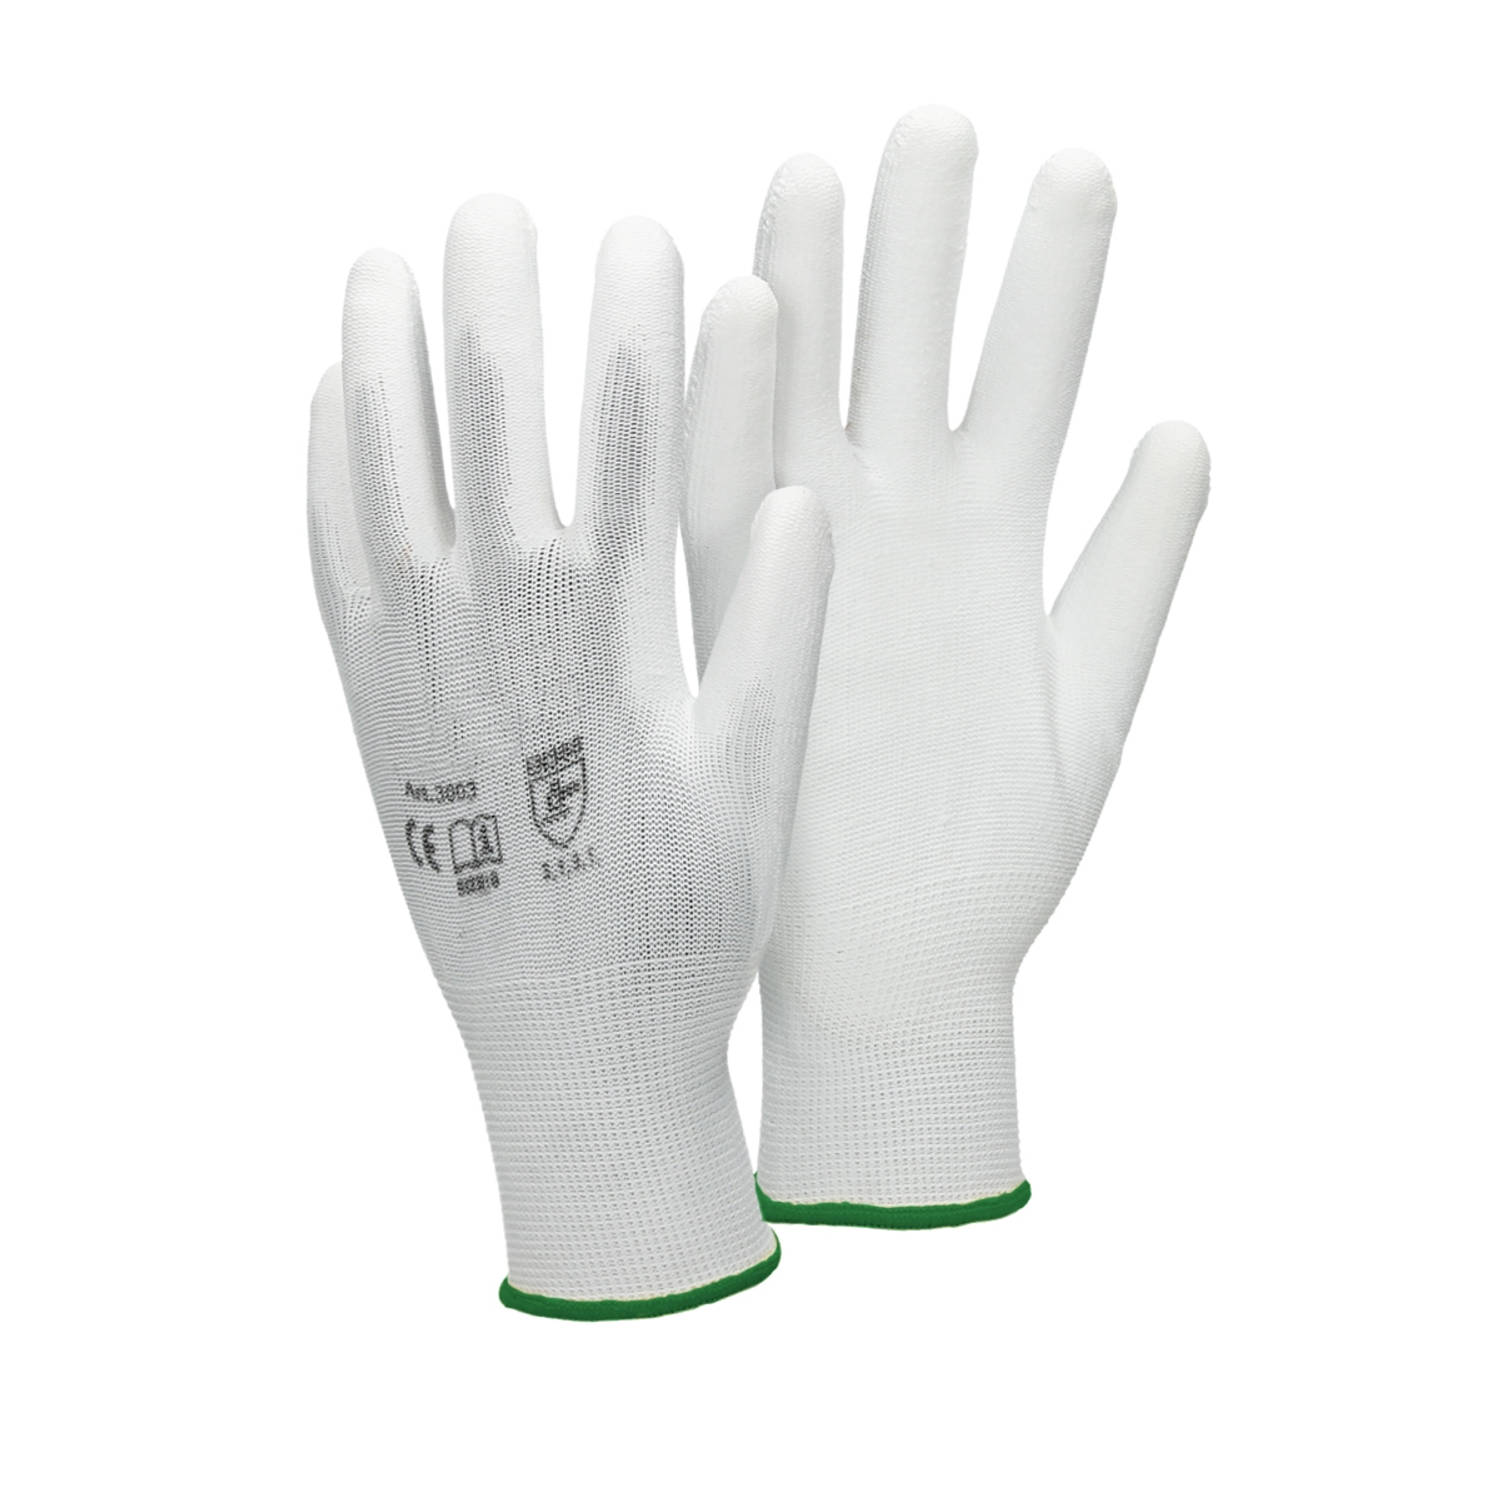 ECD Germany 4 paar werkhandschoenen met PU coating - maat 11-XXL - wit - monteurshandschoenen montagehandschoenen beschermende handschoenen tuinhandschoenen - diverse kleuren & mat